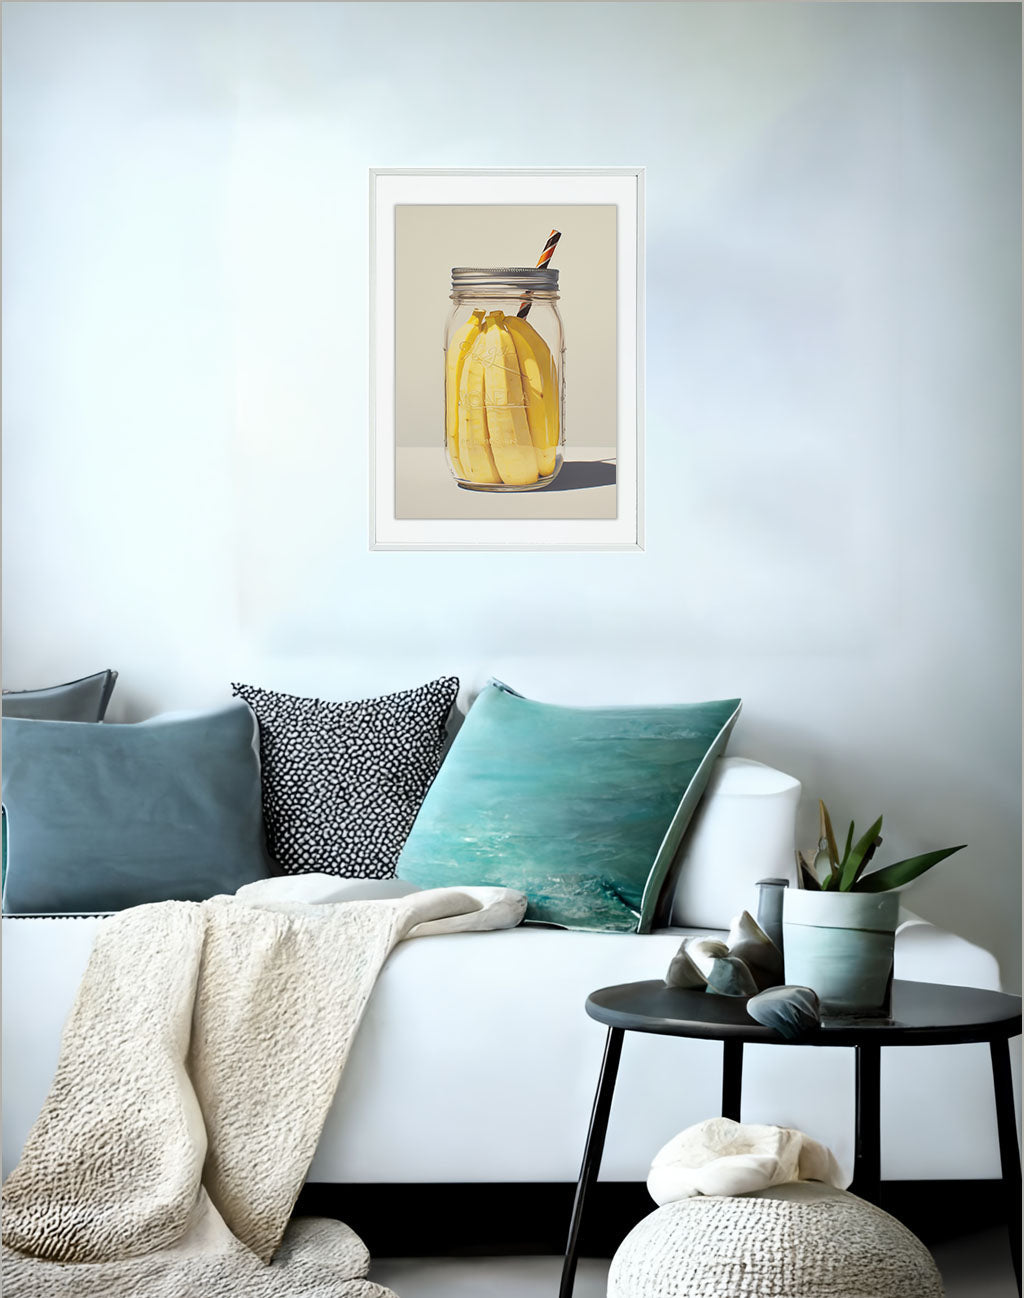 バナナのアートポスター:banana_562d / キッチン_フルーツと野菜_のポスター画像ソファ近くに設置したイメージ